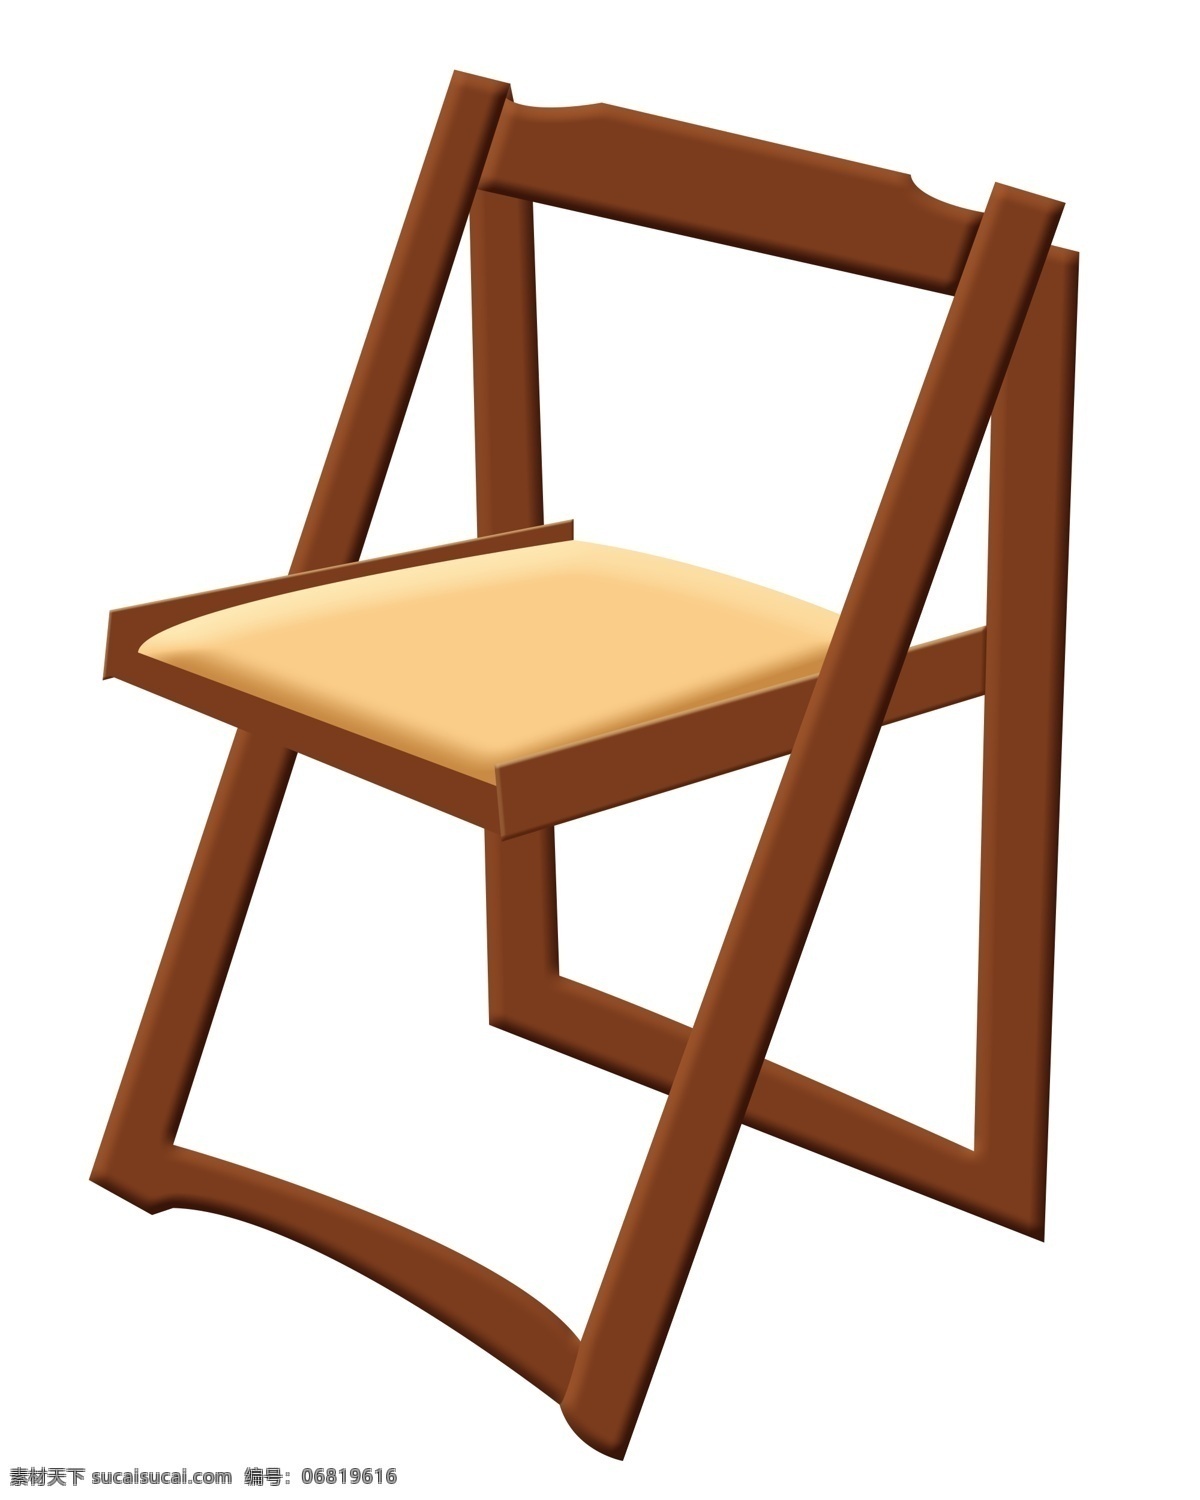 一把 红木 椅子 插画 复古椅子 红木椅子 木椅 简易红木椅子 家具 木椅子 木质 椅子插画